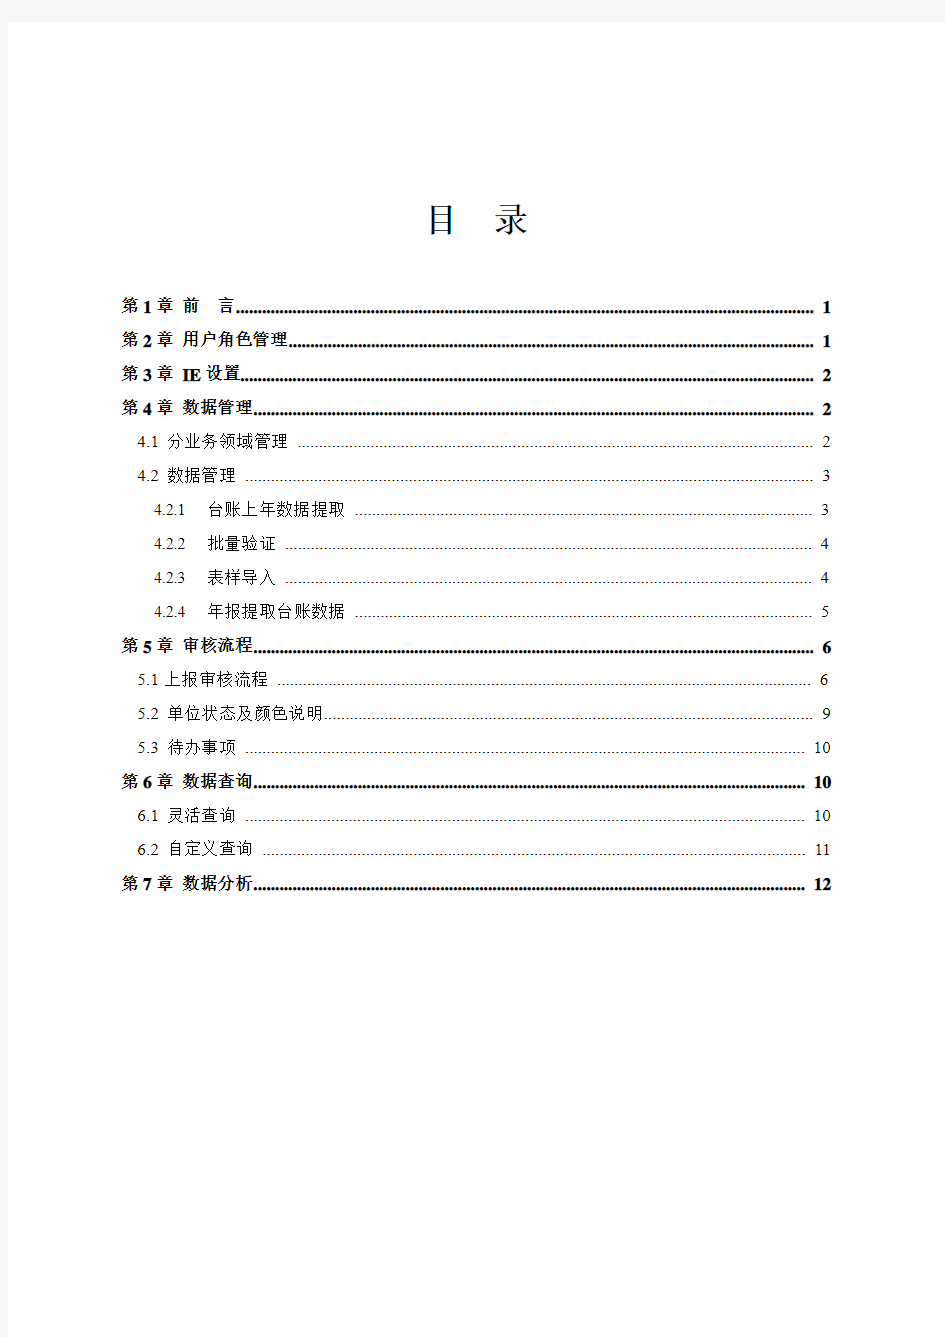 2011年中国残疾人事业统计管理系统(网络版)简明手册[1]